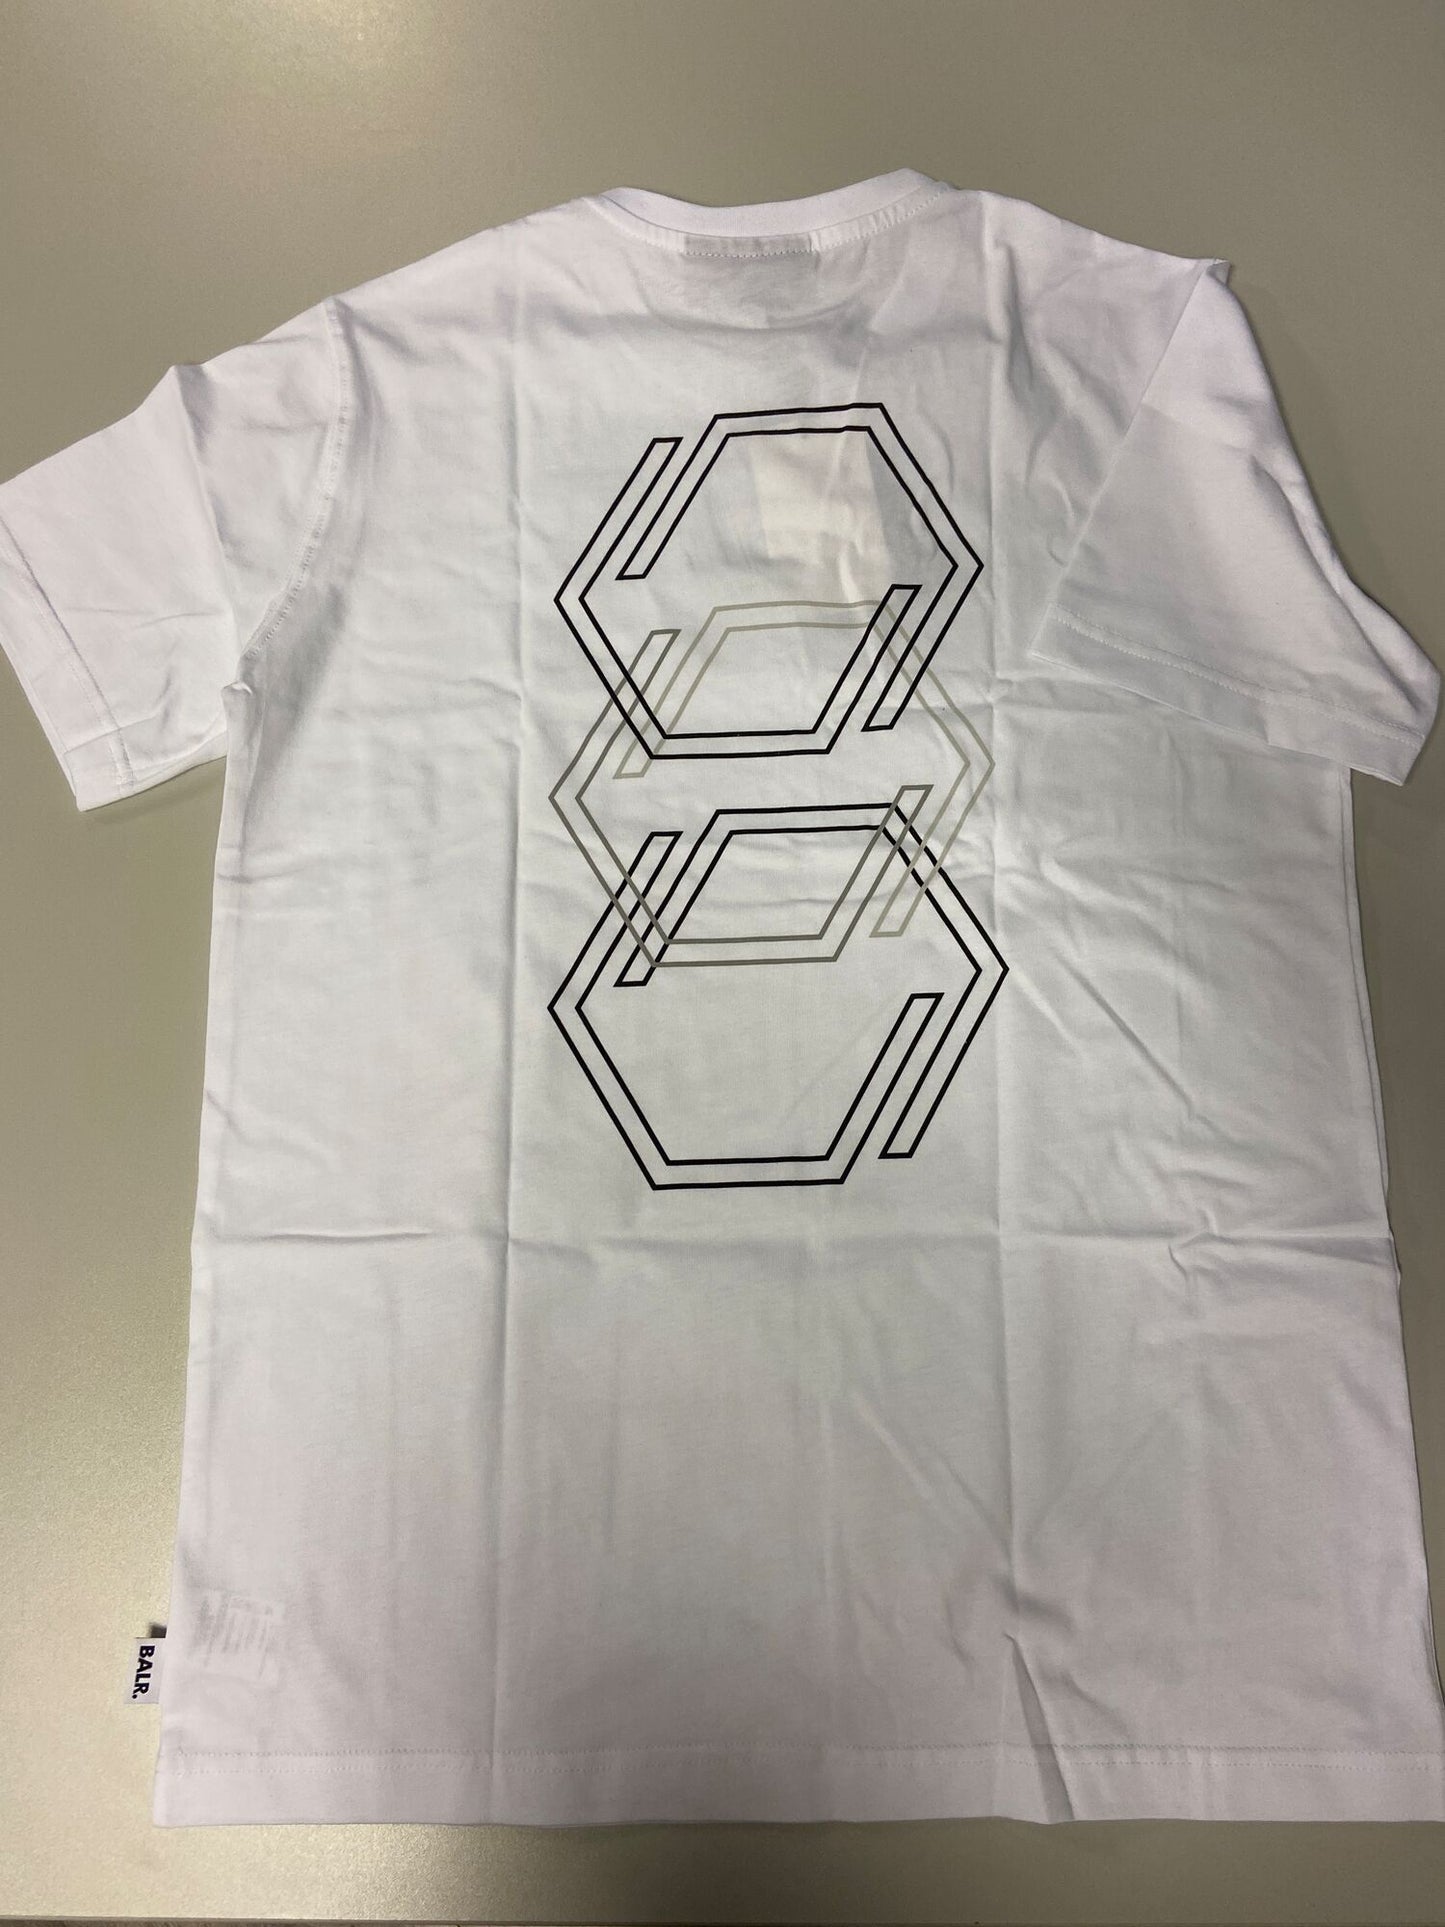 Olaf Straight Triple Hexagon T-Shirt Bright White